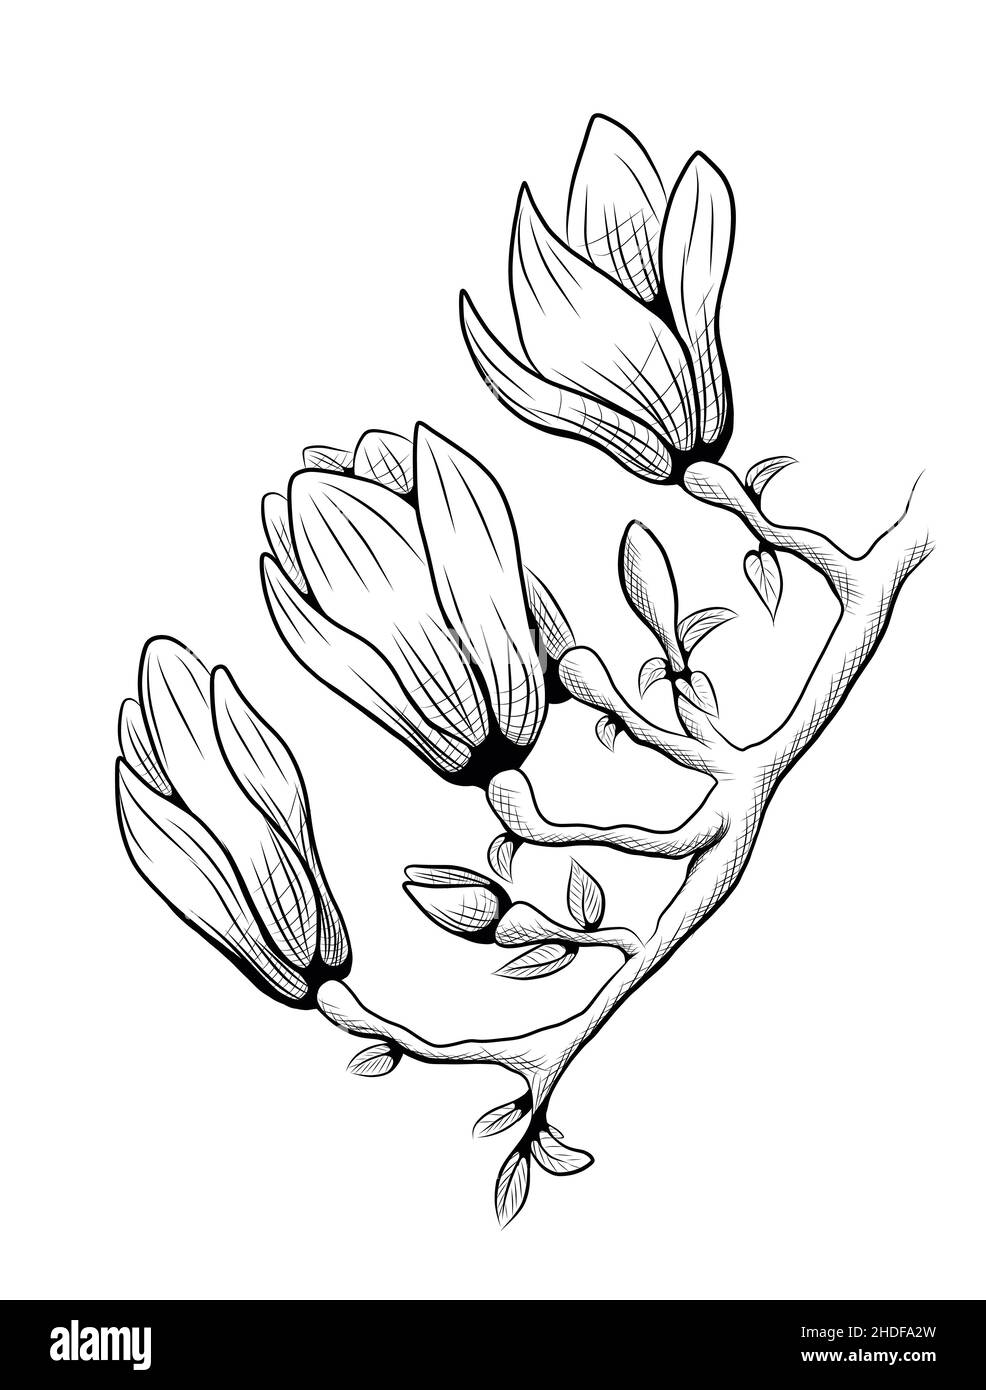 grafica, illustrazione, fiore magnolia, disegno, grafica, illustrazioni, fiori magnolia, disegni Foto Stock